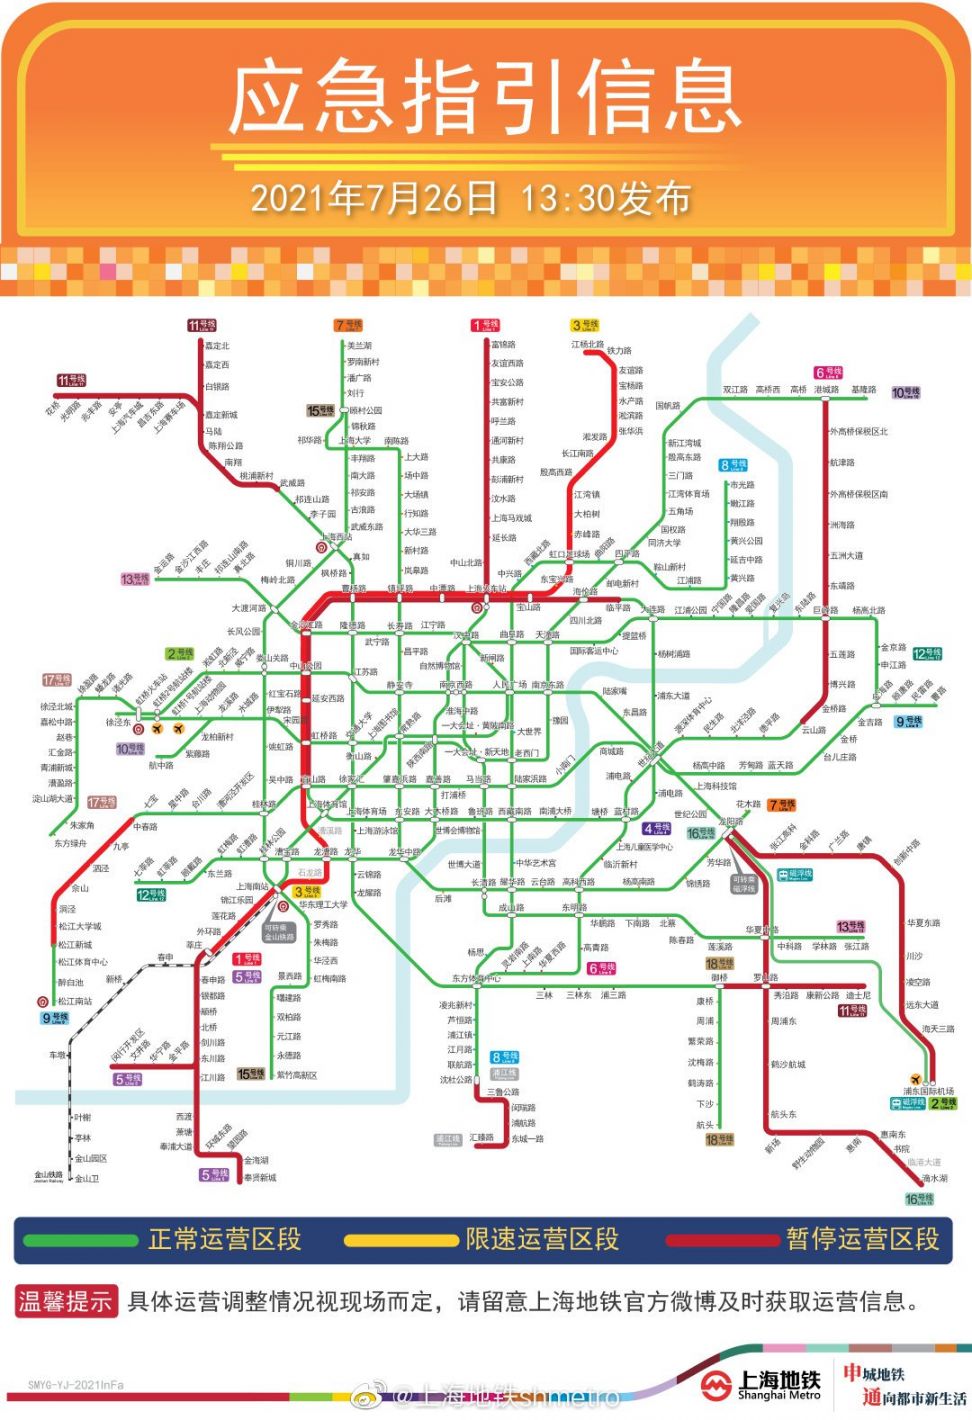 查看上海地铁恢复运营时间及线路;回复台风,即可获取2021年第六号台风